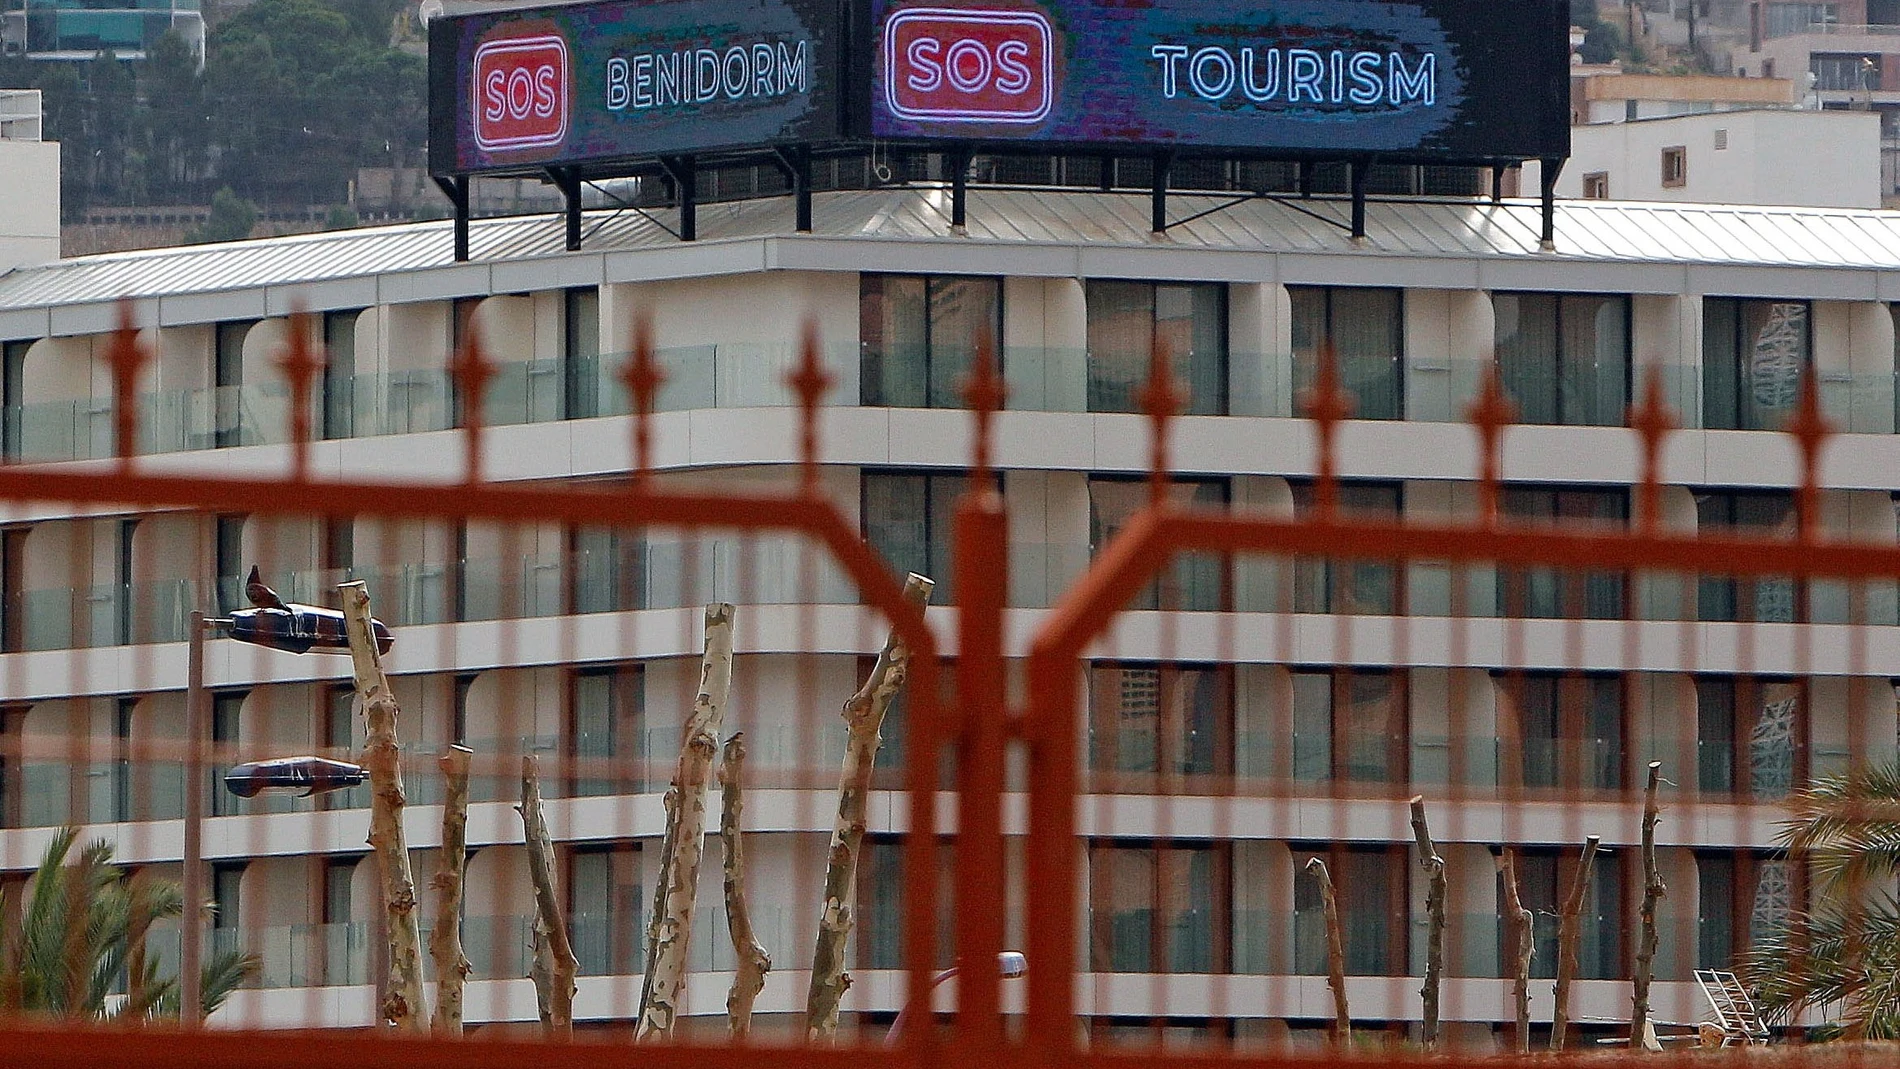 Vista general de un hotel de Benidorm que permanece cerrado debido a las medidas sanitarias